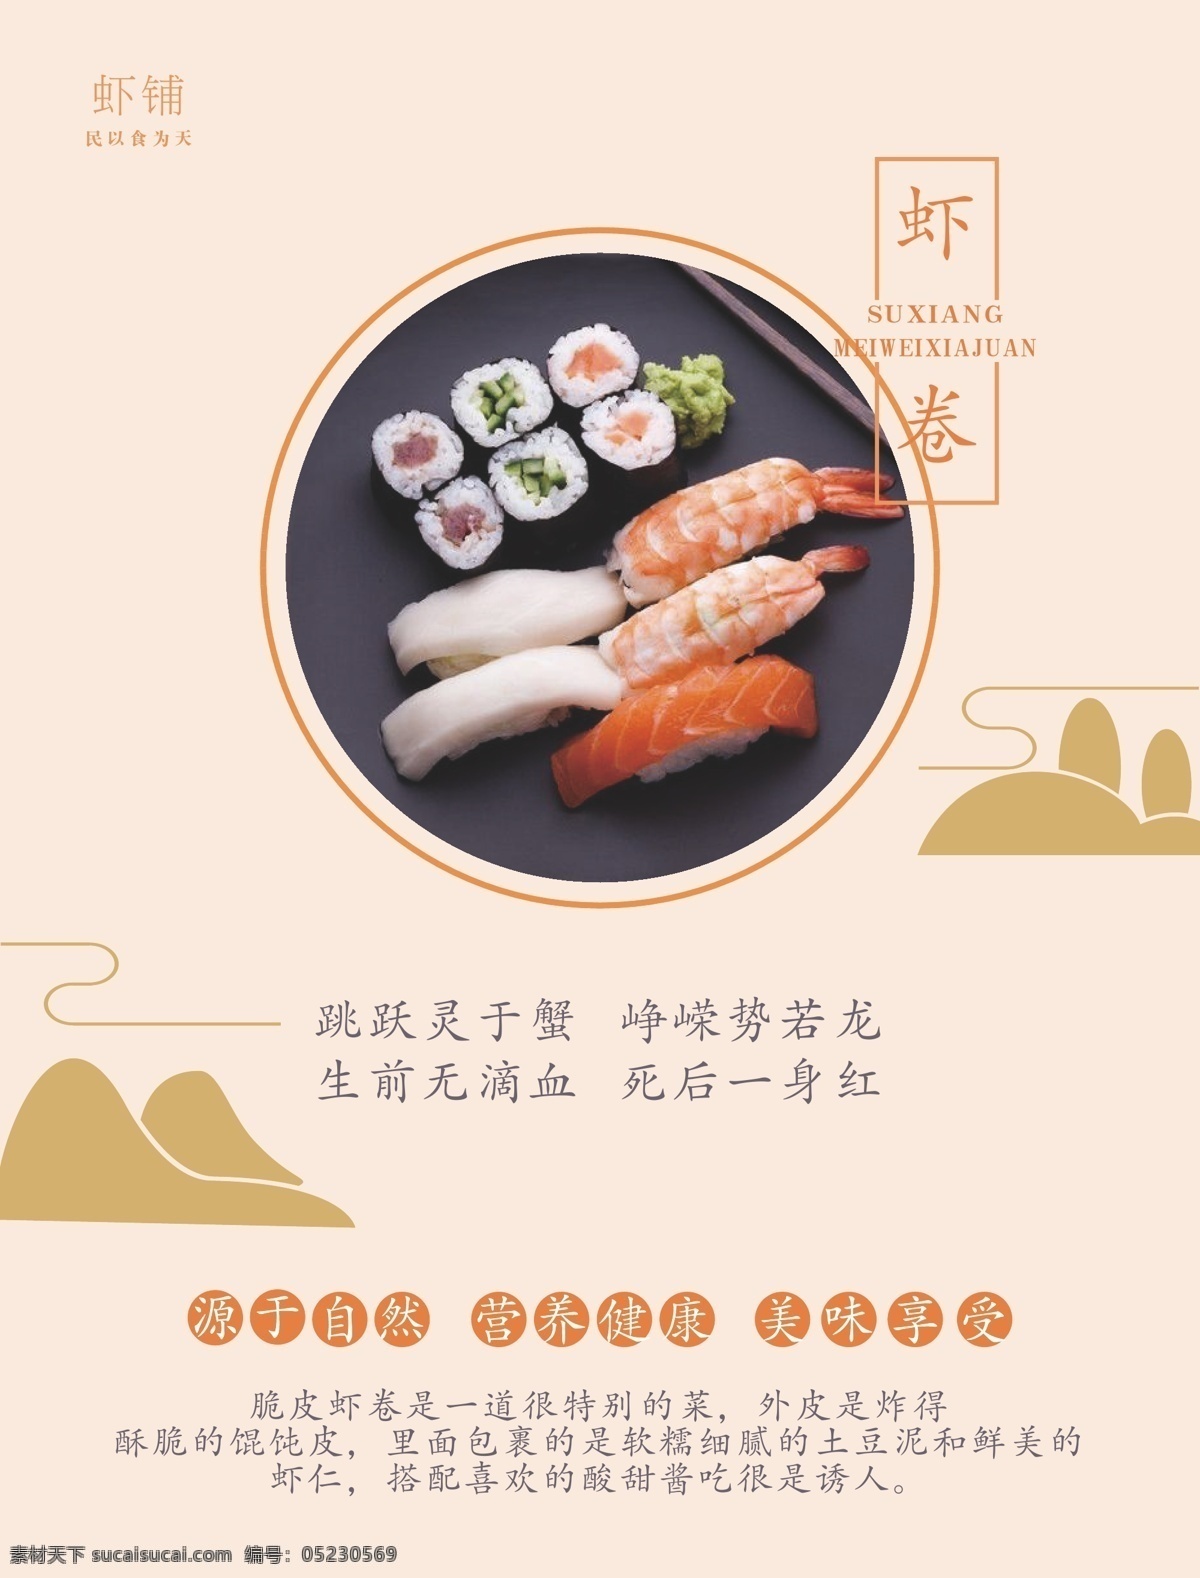 虾卷海报 虾卷 海鲜料理 海鲜广告